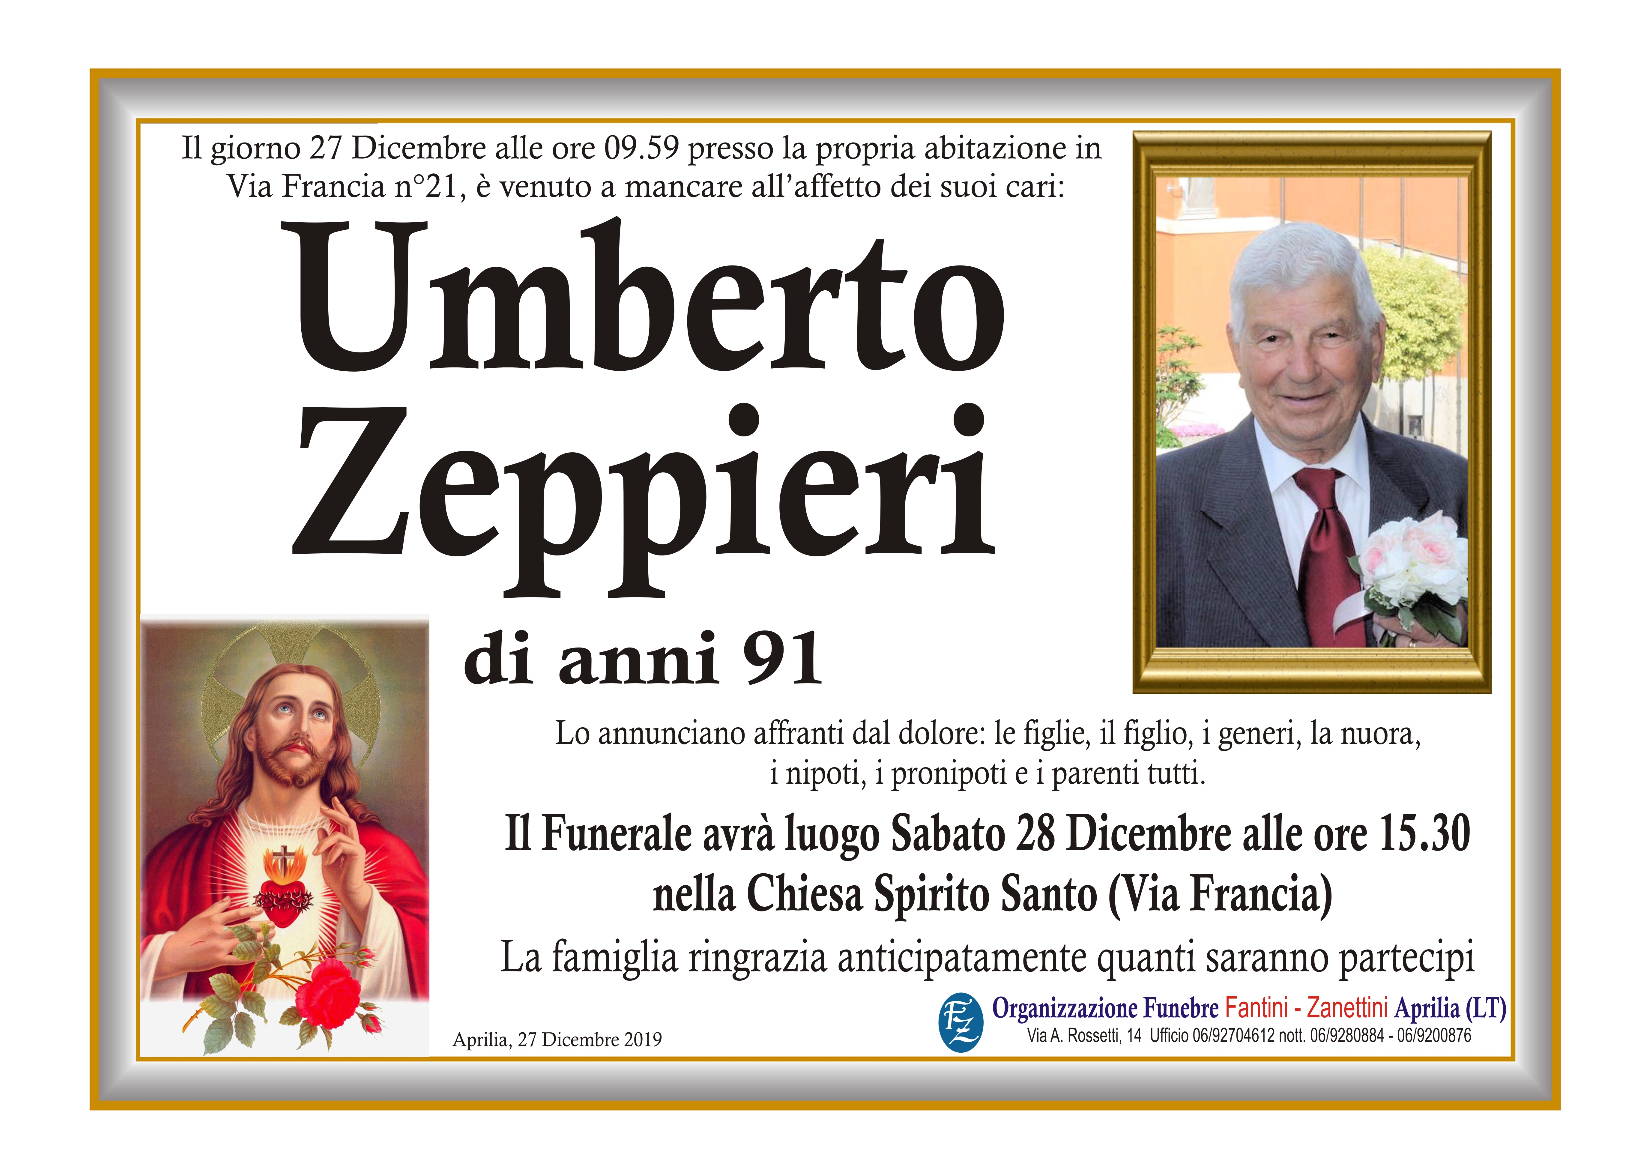 Umberto Zeppieri